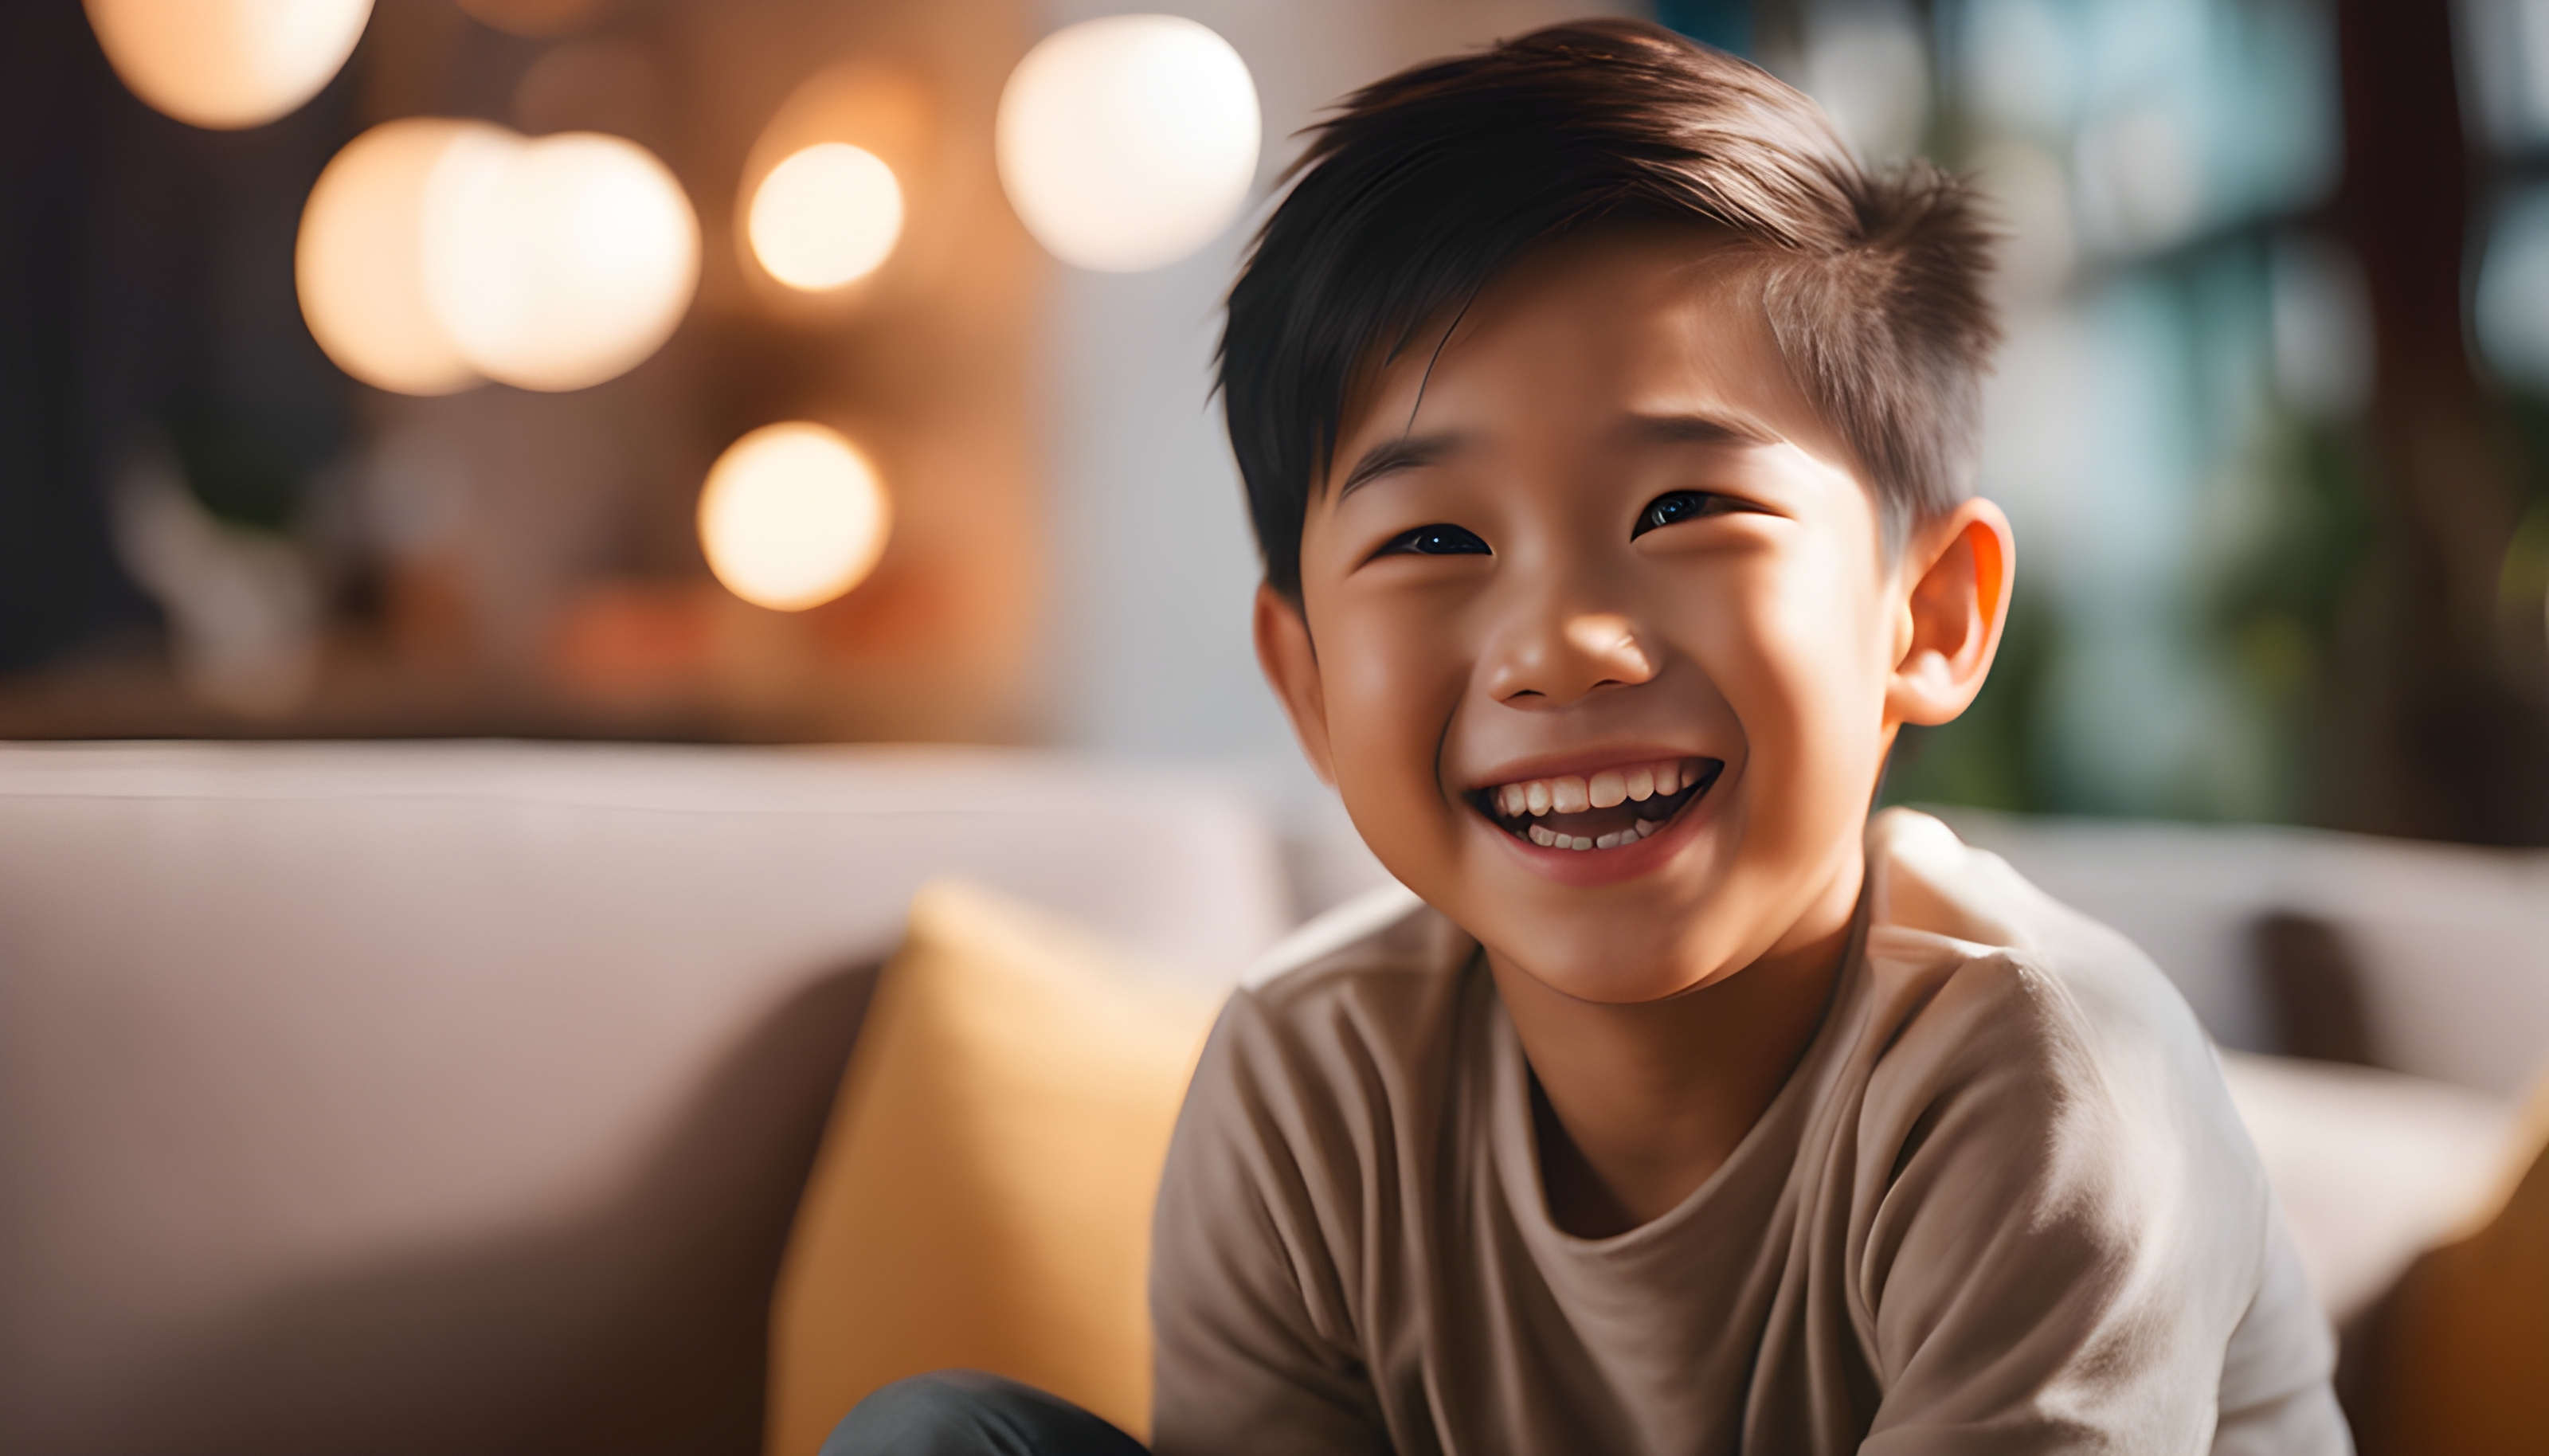 สร้างภาพโฆษณา เด็กชายชาวเอเชียยิ้มด้วยความสนุกสนาน ด้านหลังเป็นห้องนั่งเล่น cinematic scene กล้อง ARRIFLEX 35BL เลนส์ Canon K35 Primes